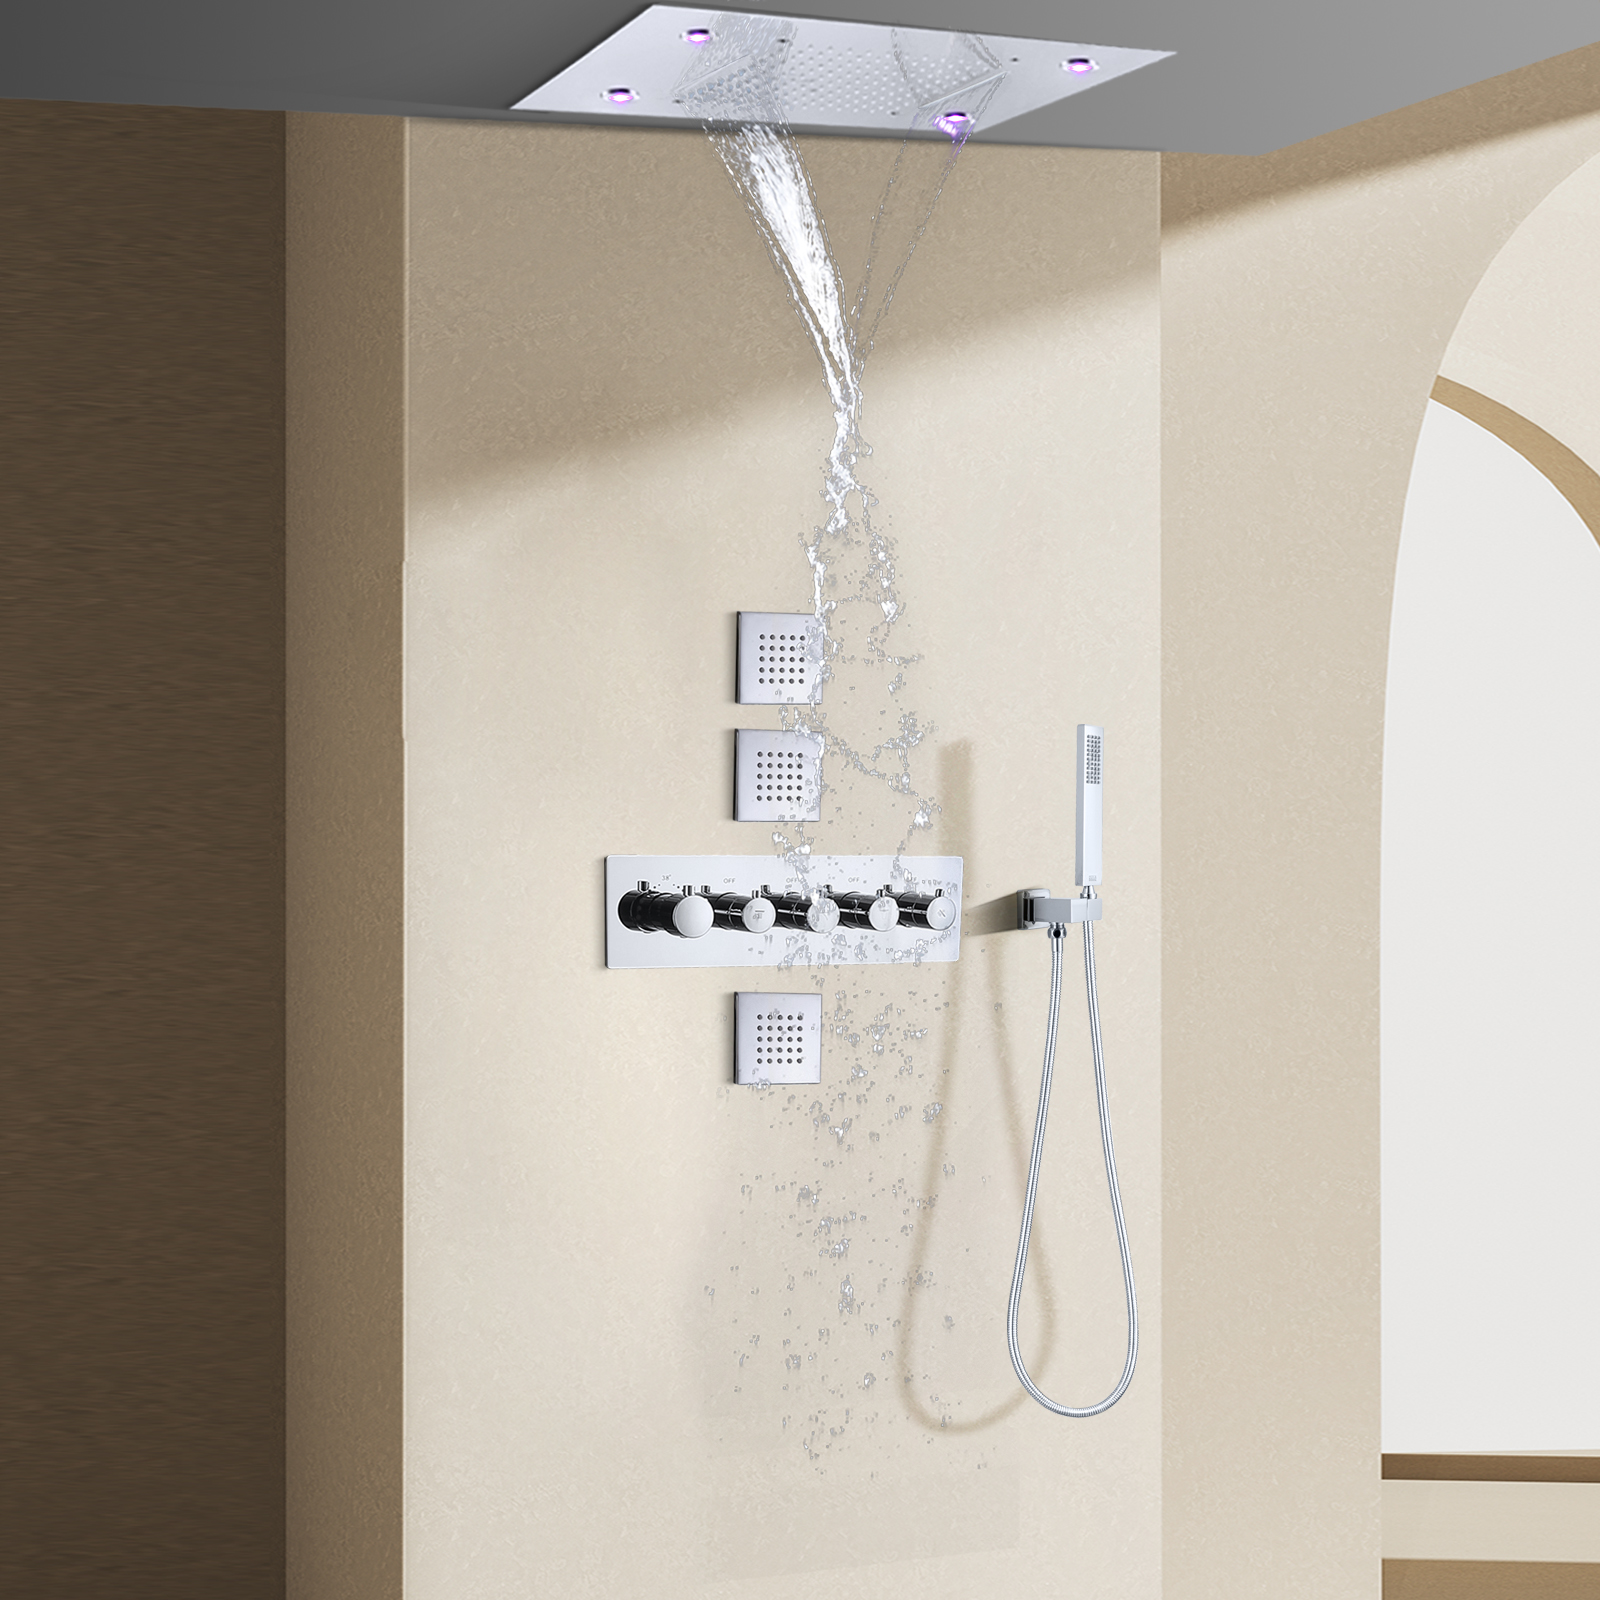 Sistema de ducha de lluvia termostática pulida cromada, juego de ducha termostática LED para baño de 14x20 pulgadas con chorros corporales